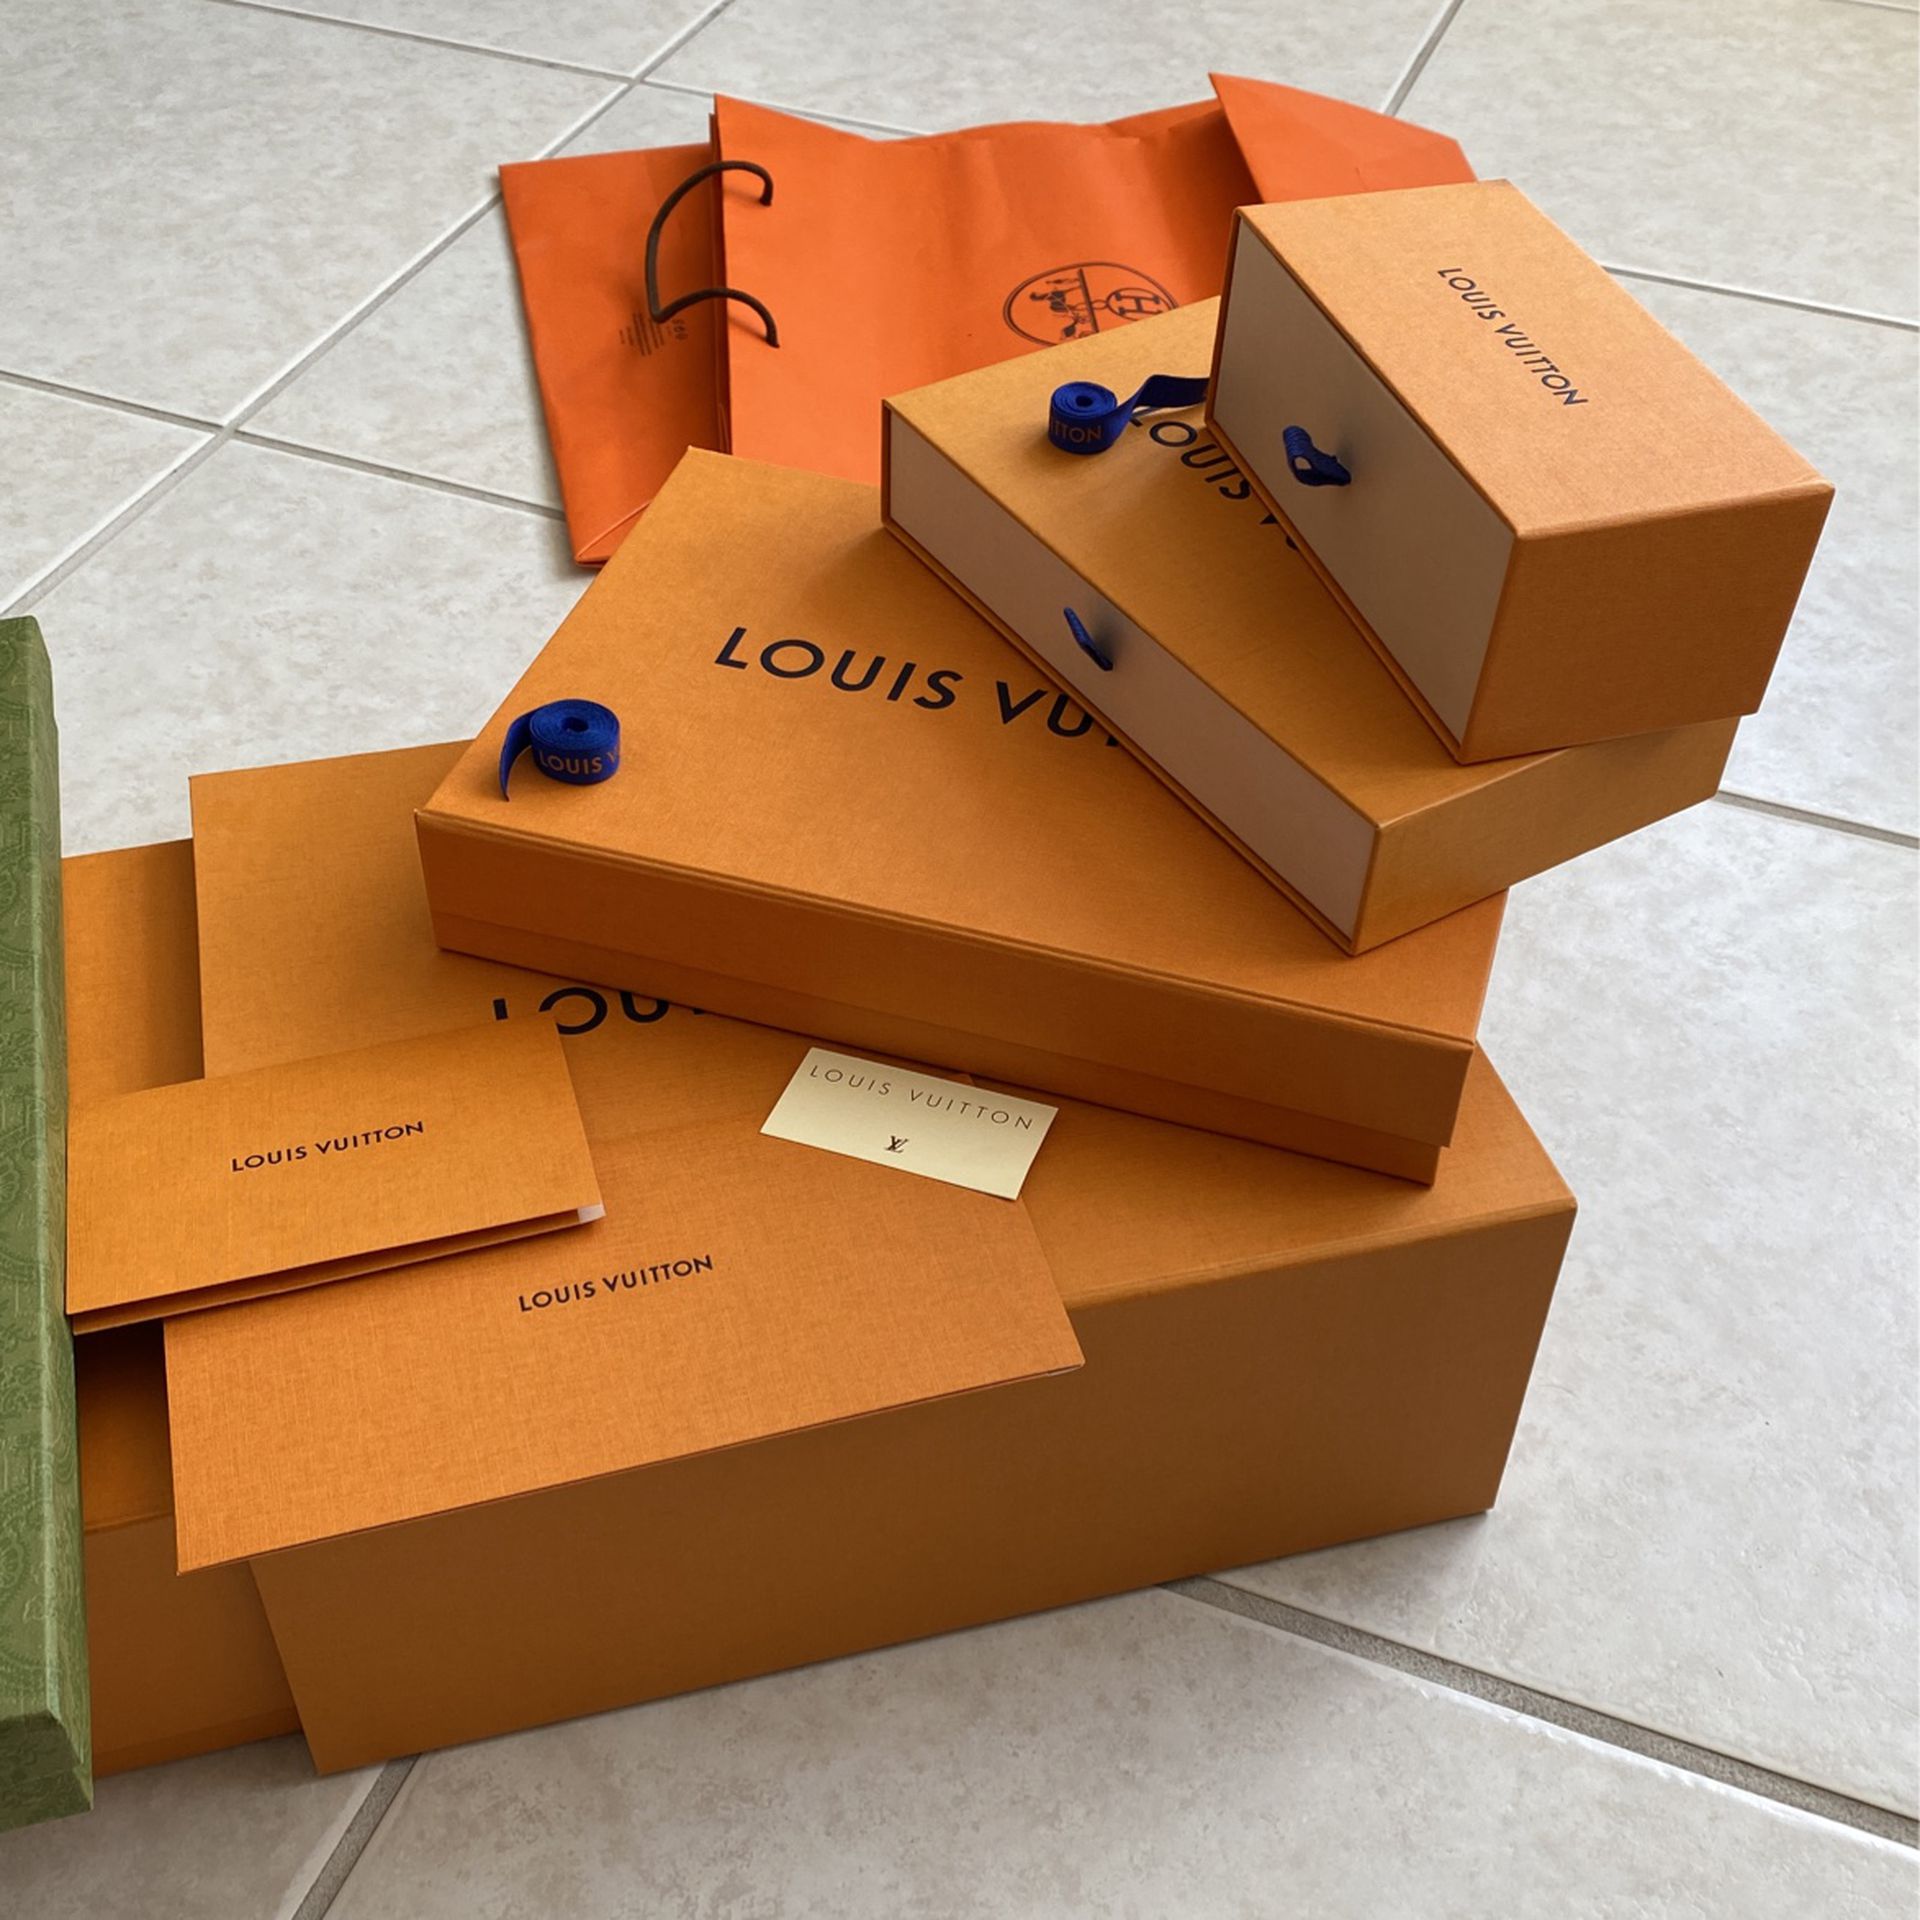 Louis Vuitton And Gucci Box for Sale in North Miami Beach, FL